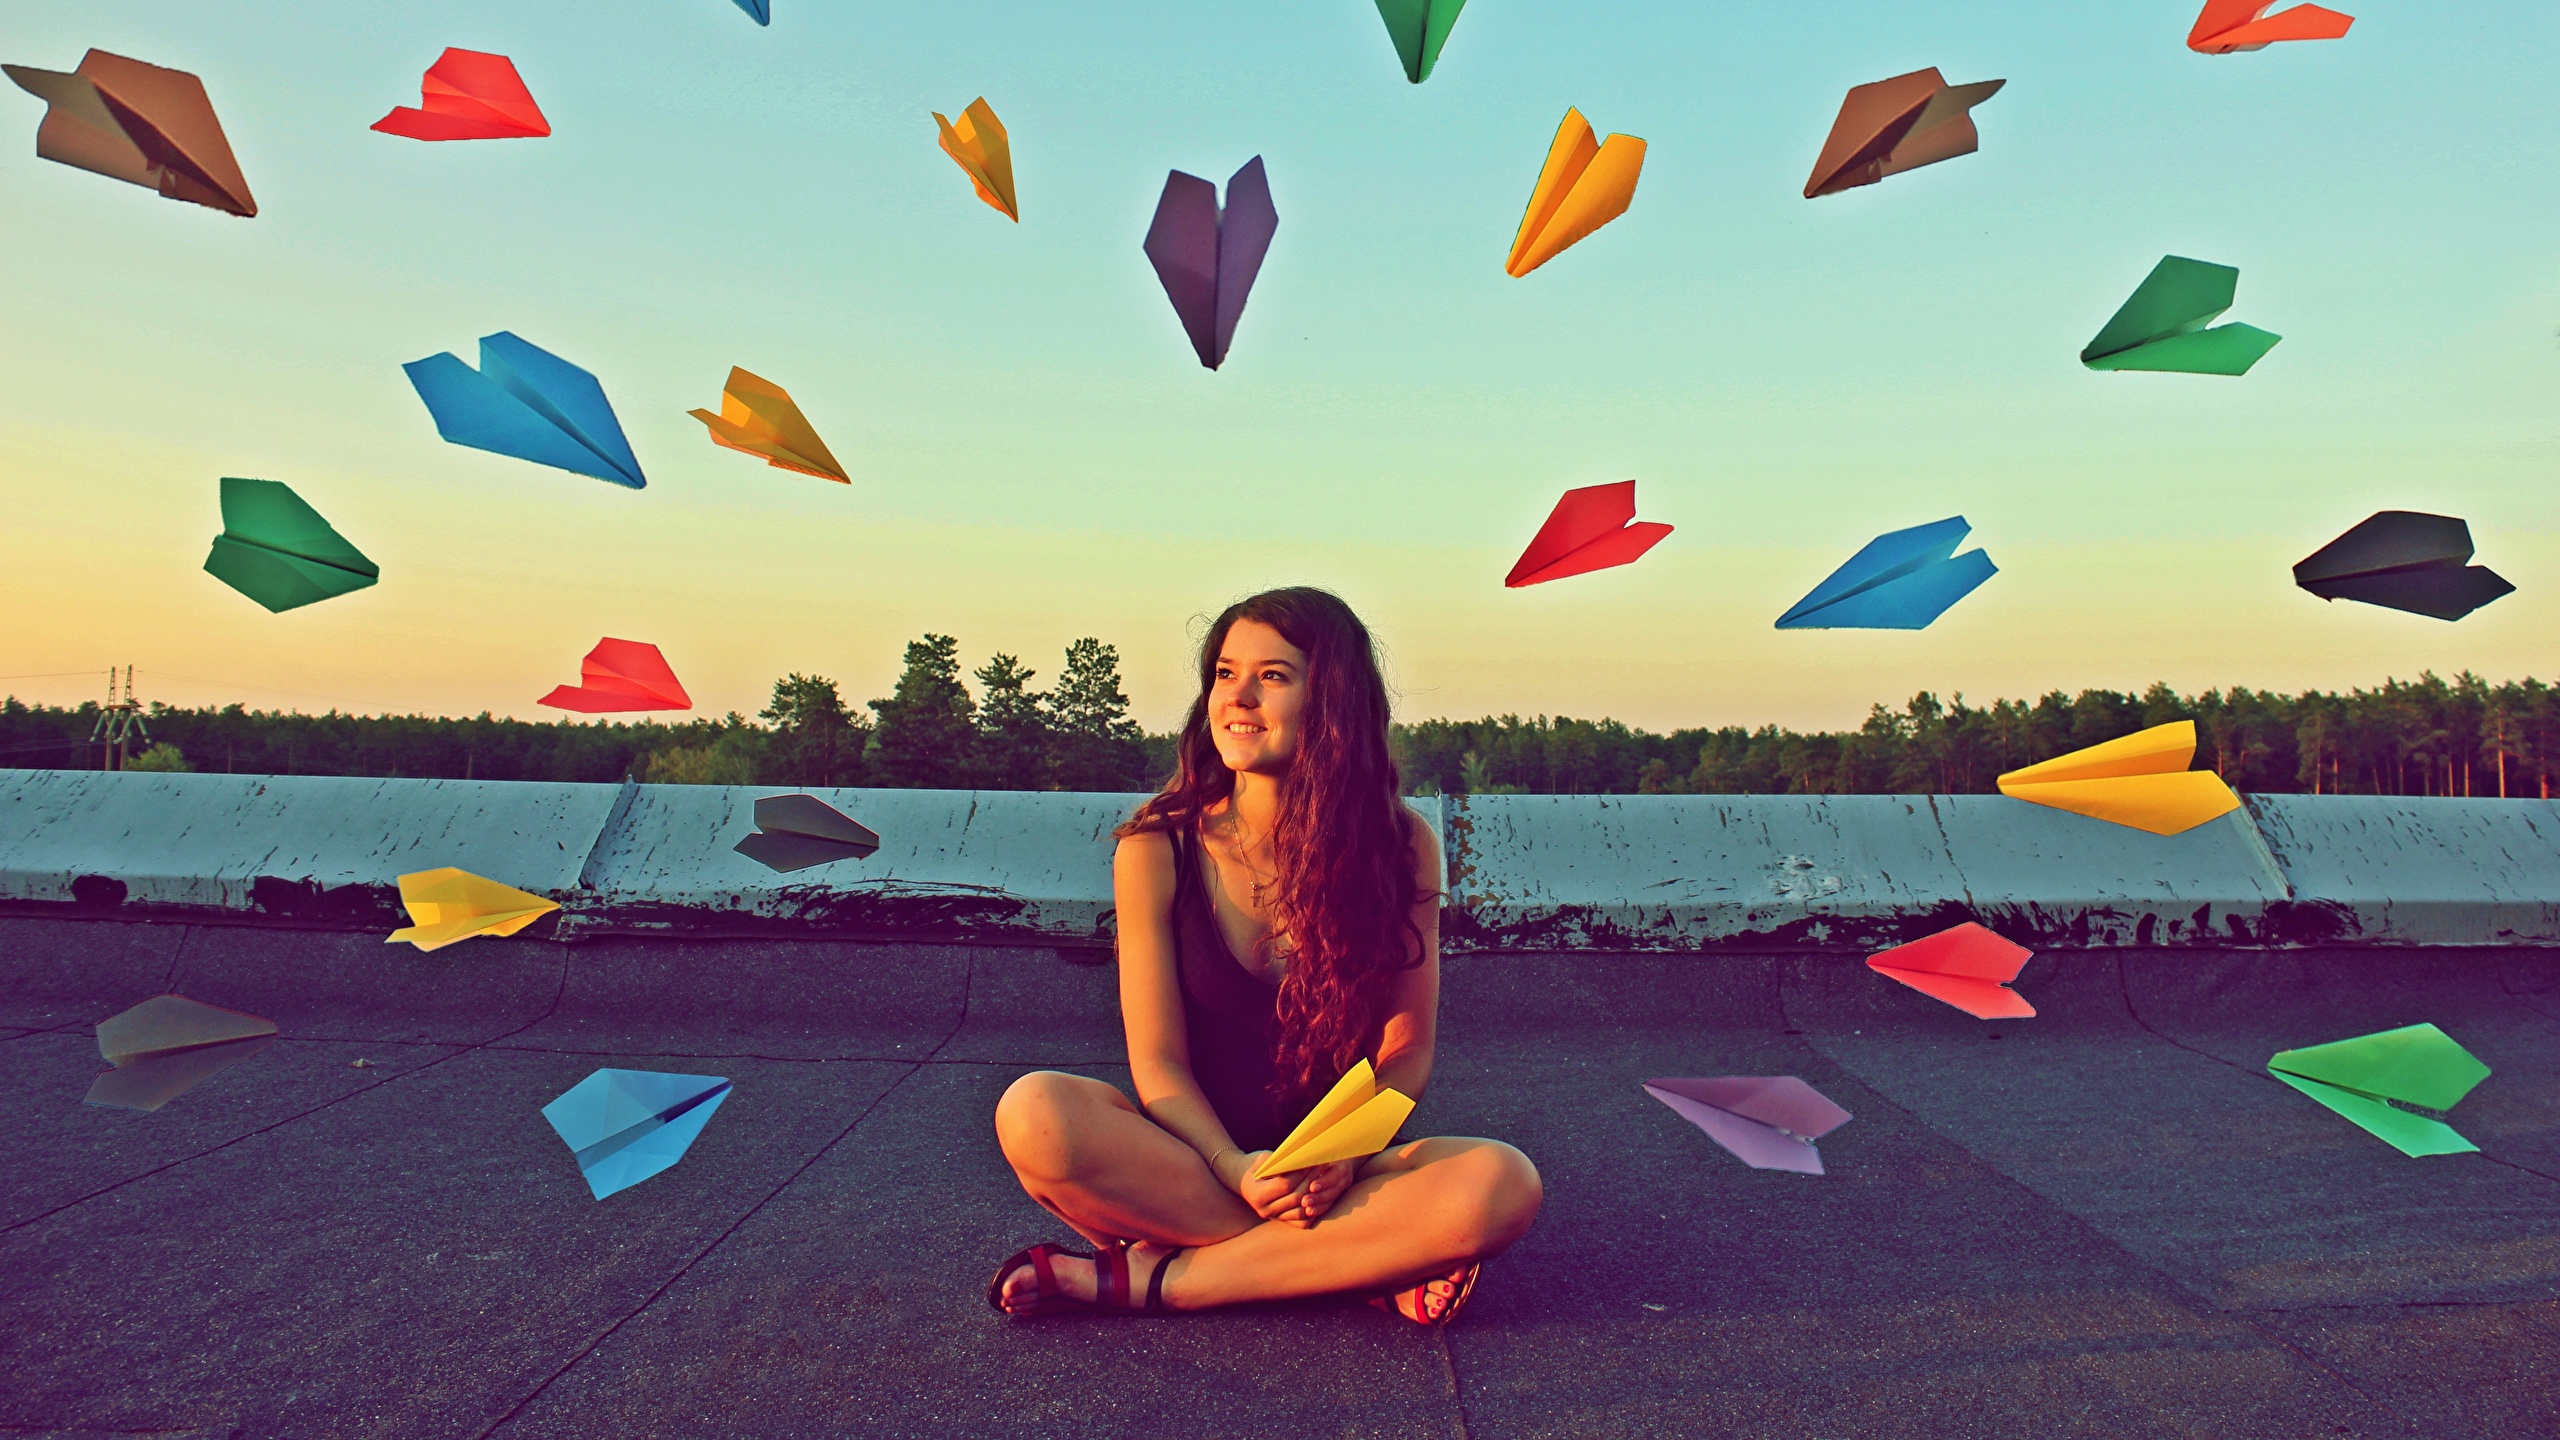 Картинка paper airplanes Разноцветные девушка оригинальные сидящие 2560x1440 Девушки молодая женщина молодые женщины Креатив креативные сидя Сидит